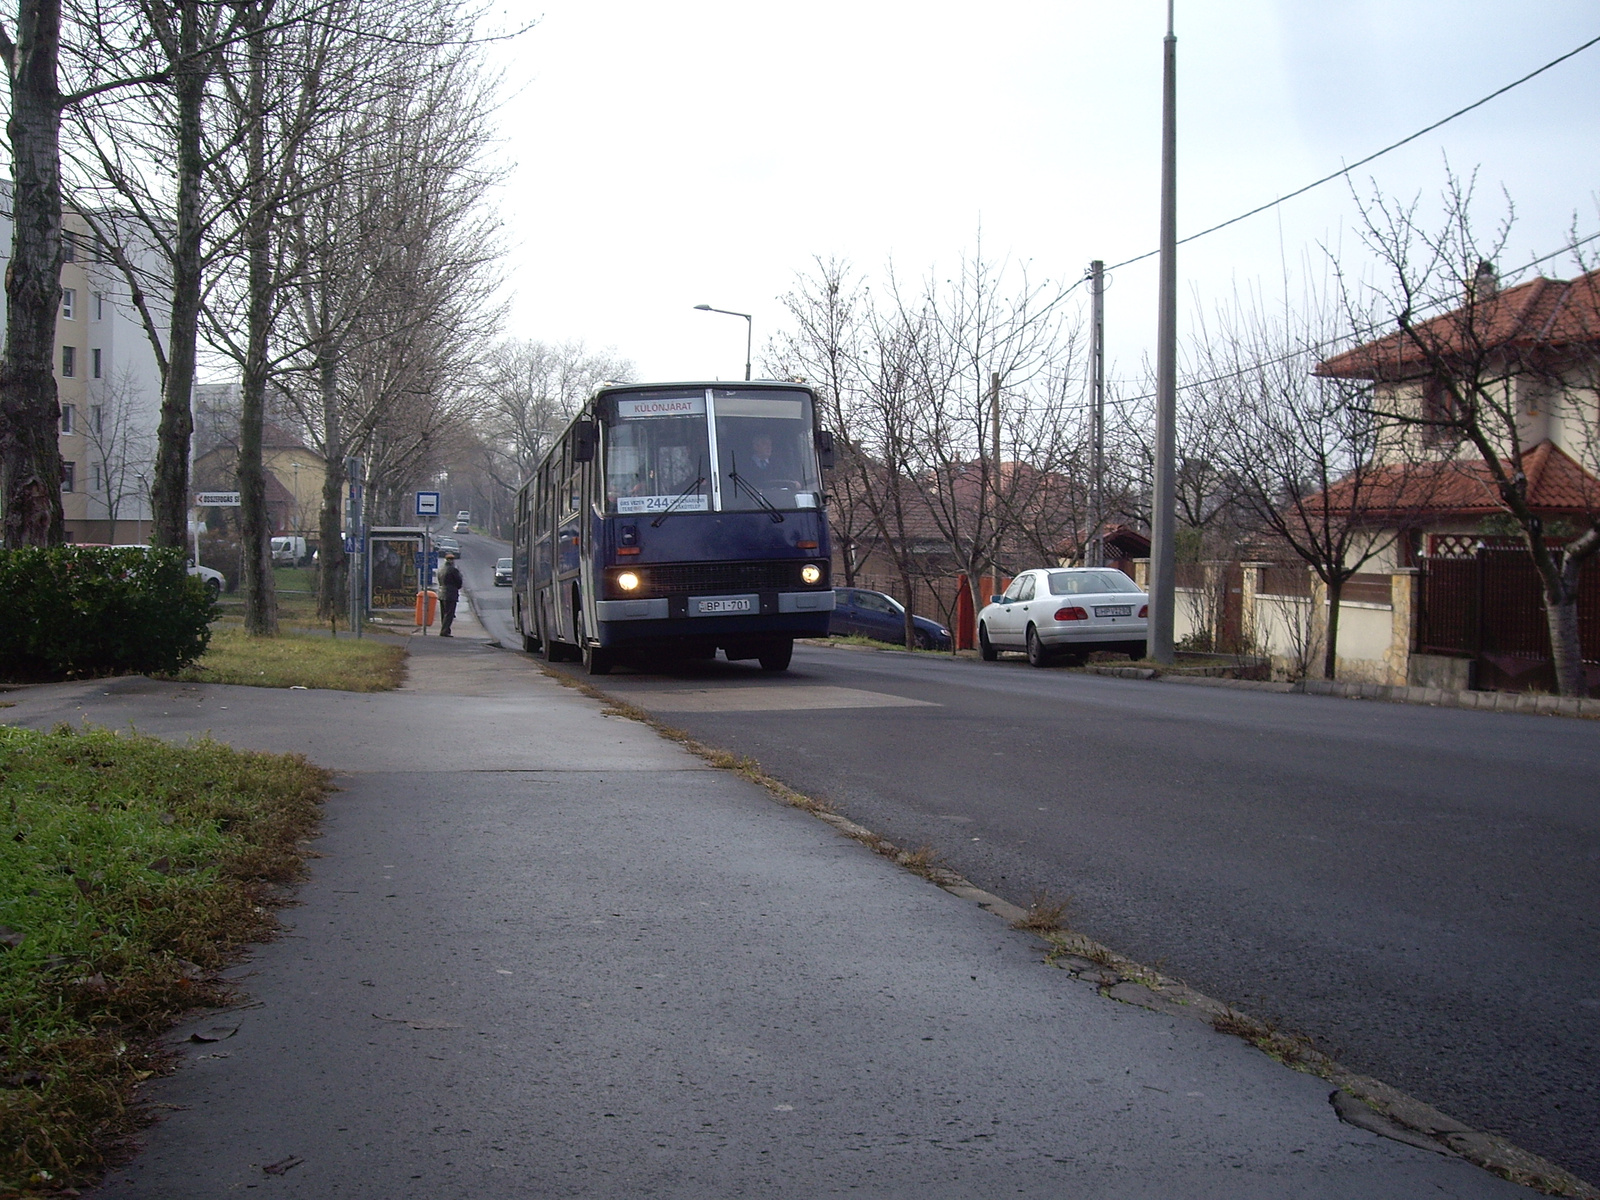 BPI-701 (Ikarus 280.49, Budapesti út)